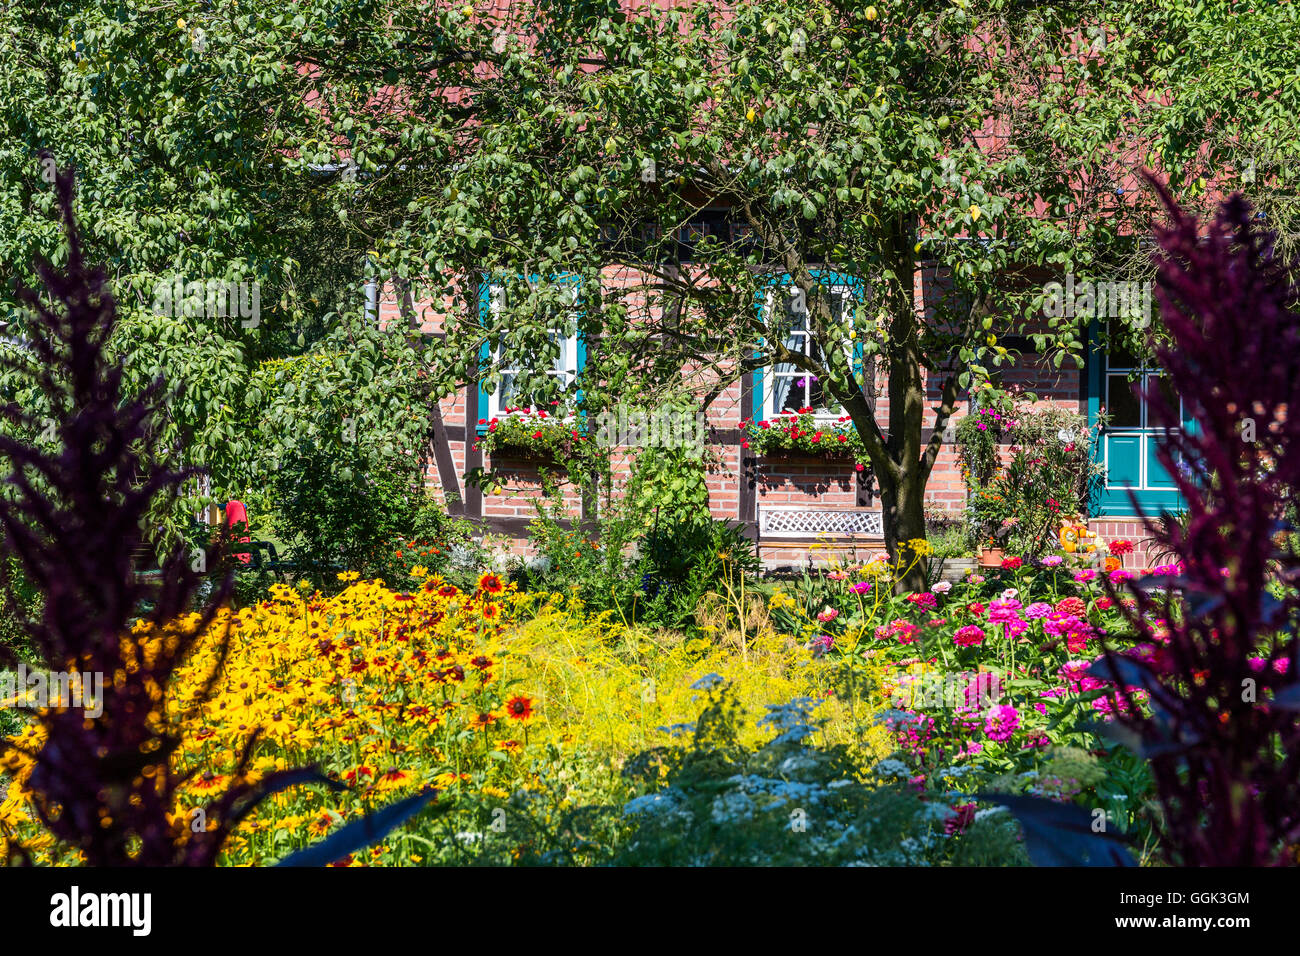 Casa colonica con giardino cottage in Lehde, Spreewald, riserva della biosfera dall'UNESCO, Brandeburgo, Germania, Europa Foto Stock